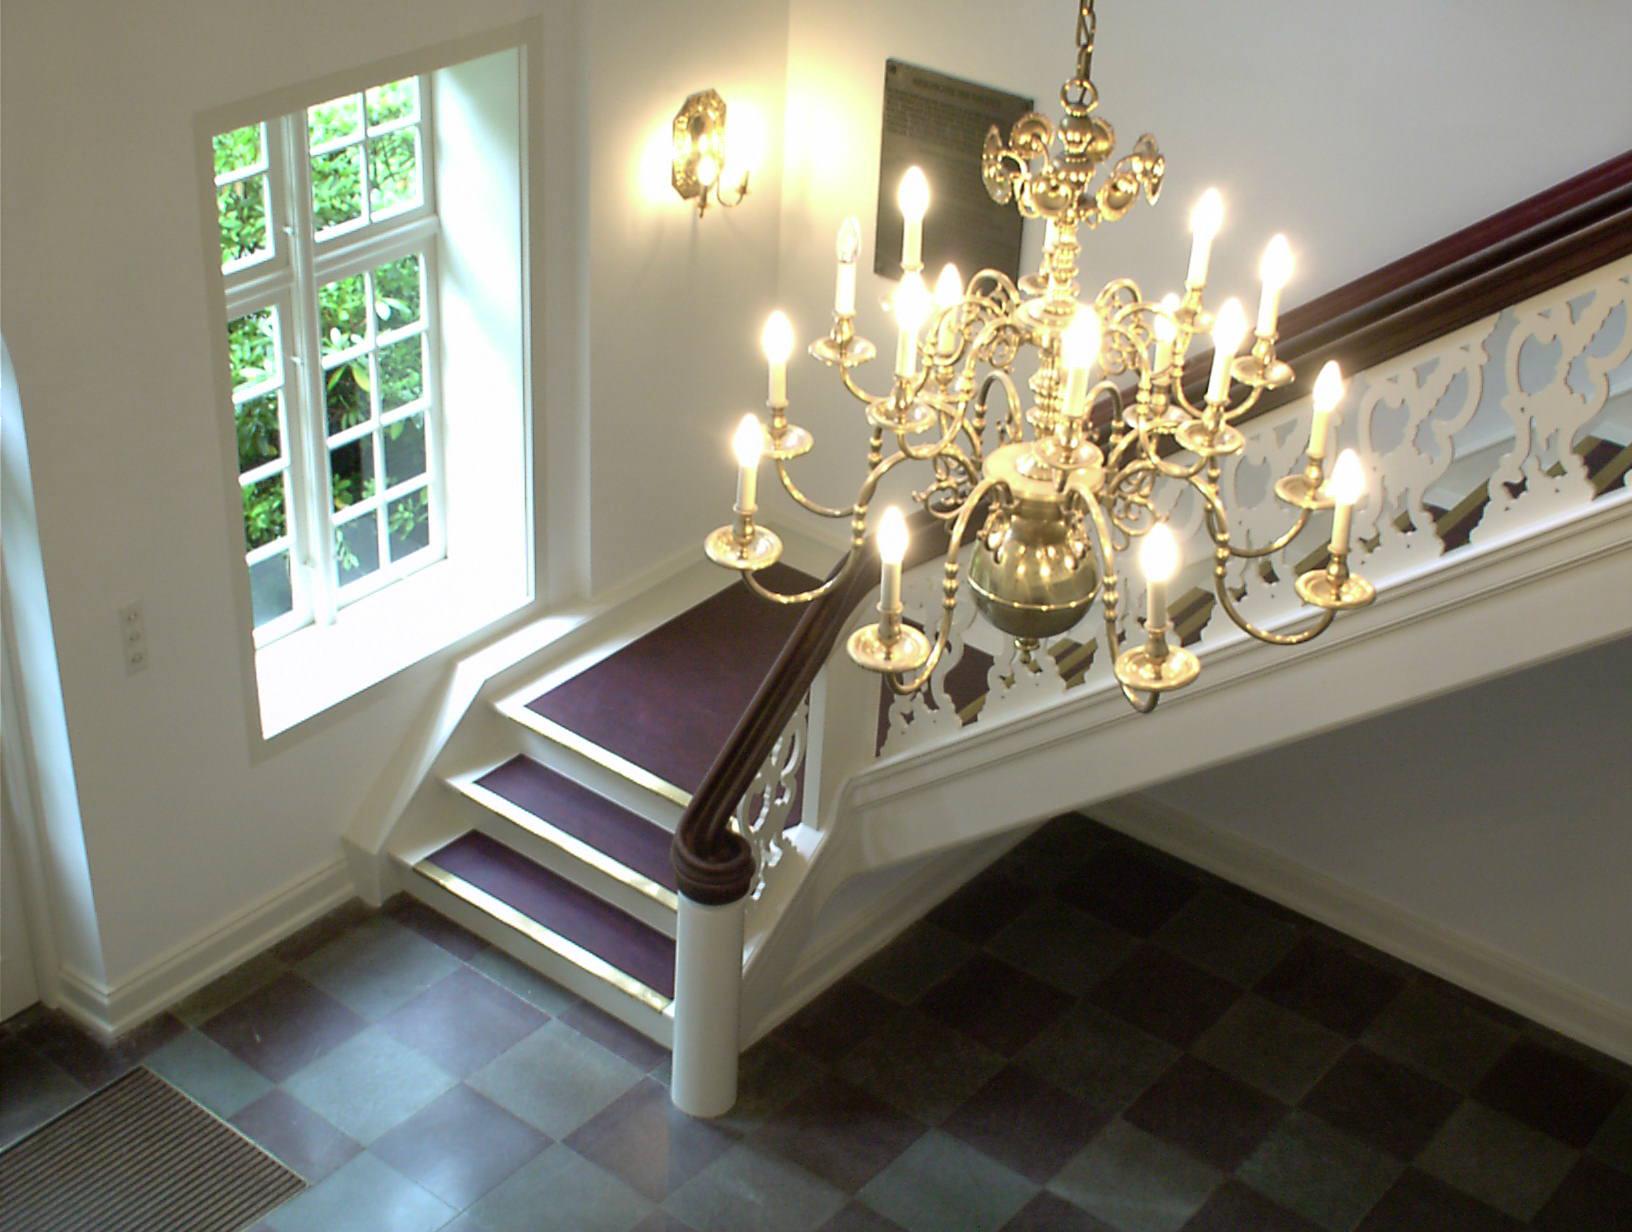 Eingangsdiele im Stavenhagenhaus, Treppe ins Obergeschoss mit Kronleuchter